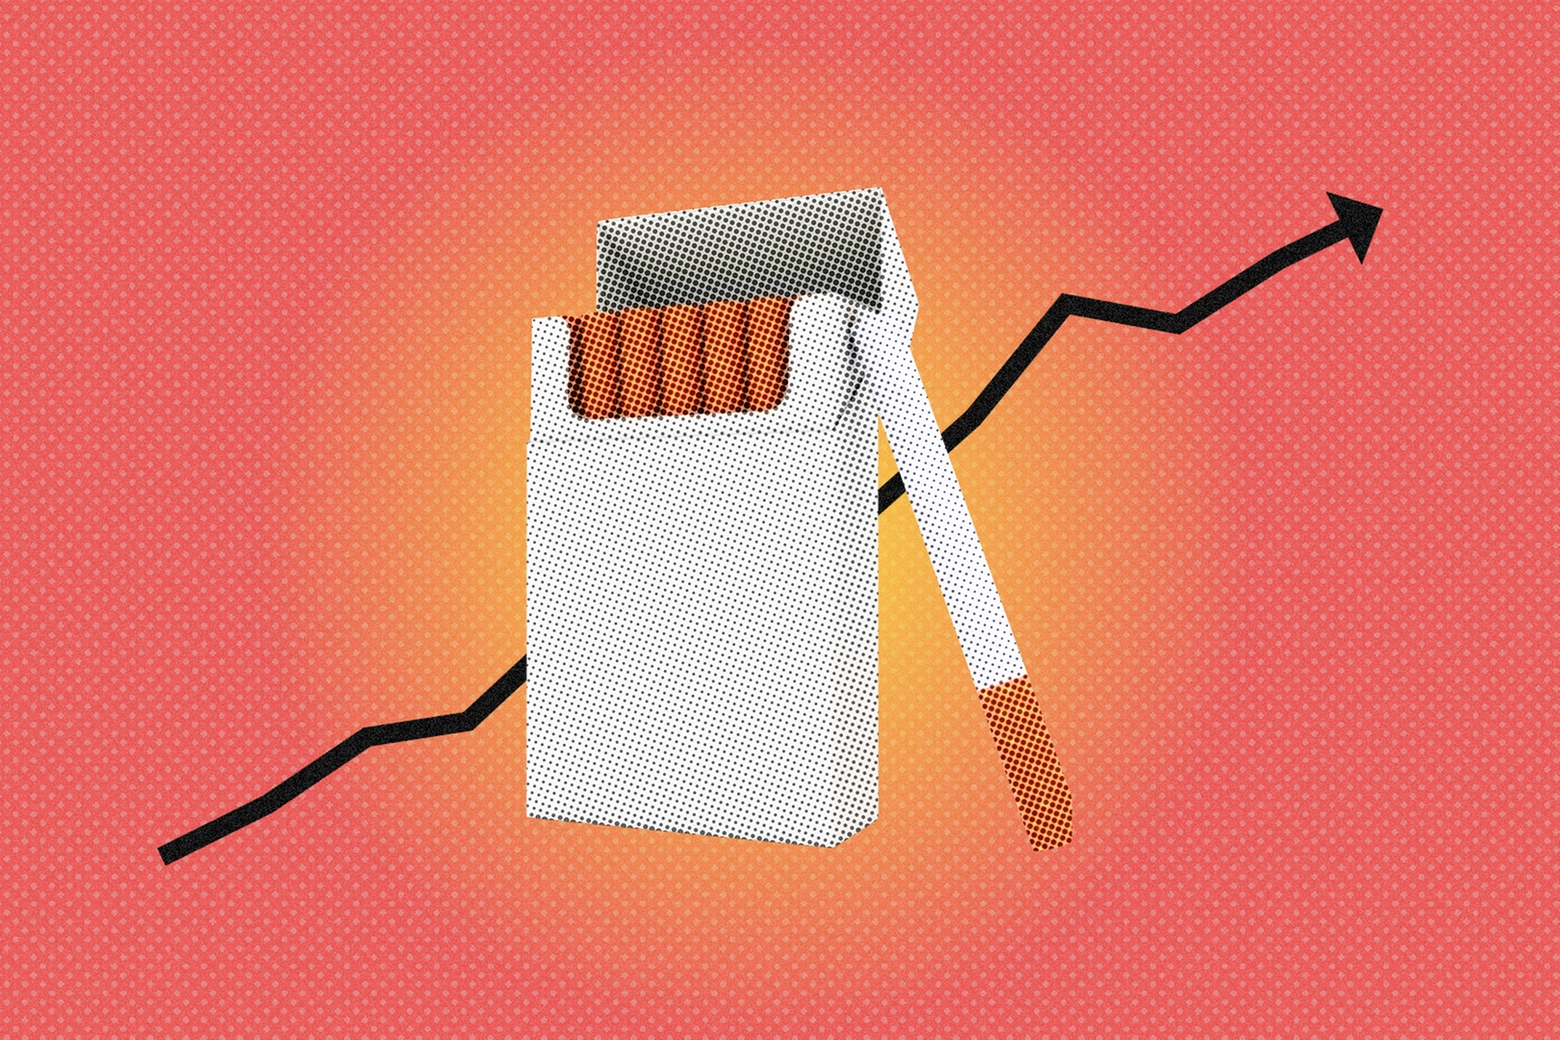 Il prezzo delle sigarette aumenterà di 20 centesimi a pacchetto